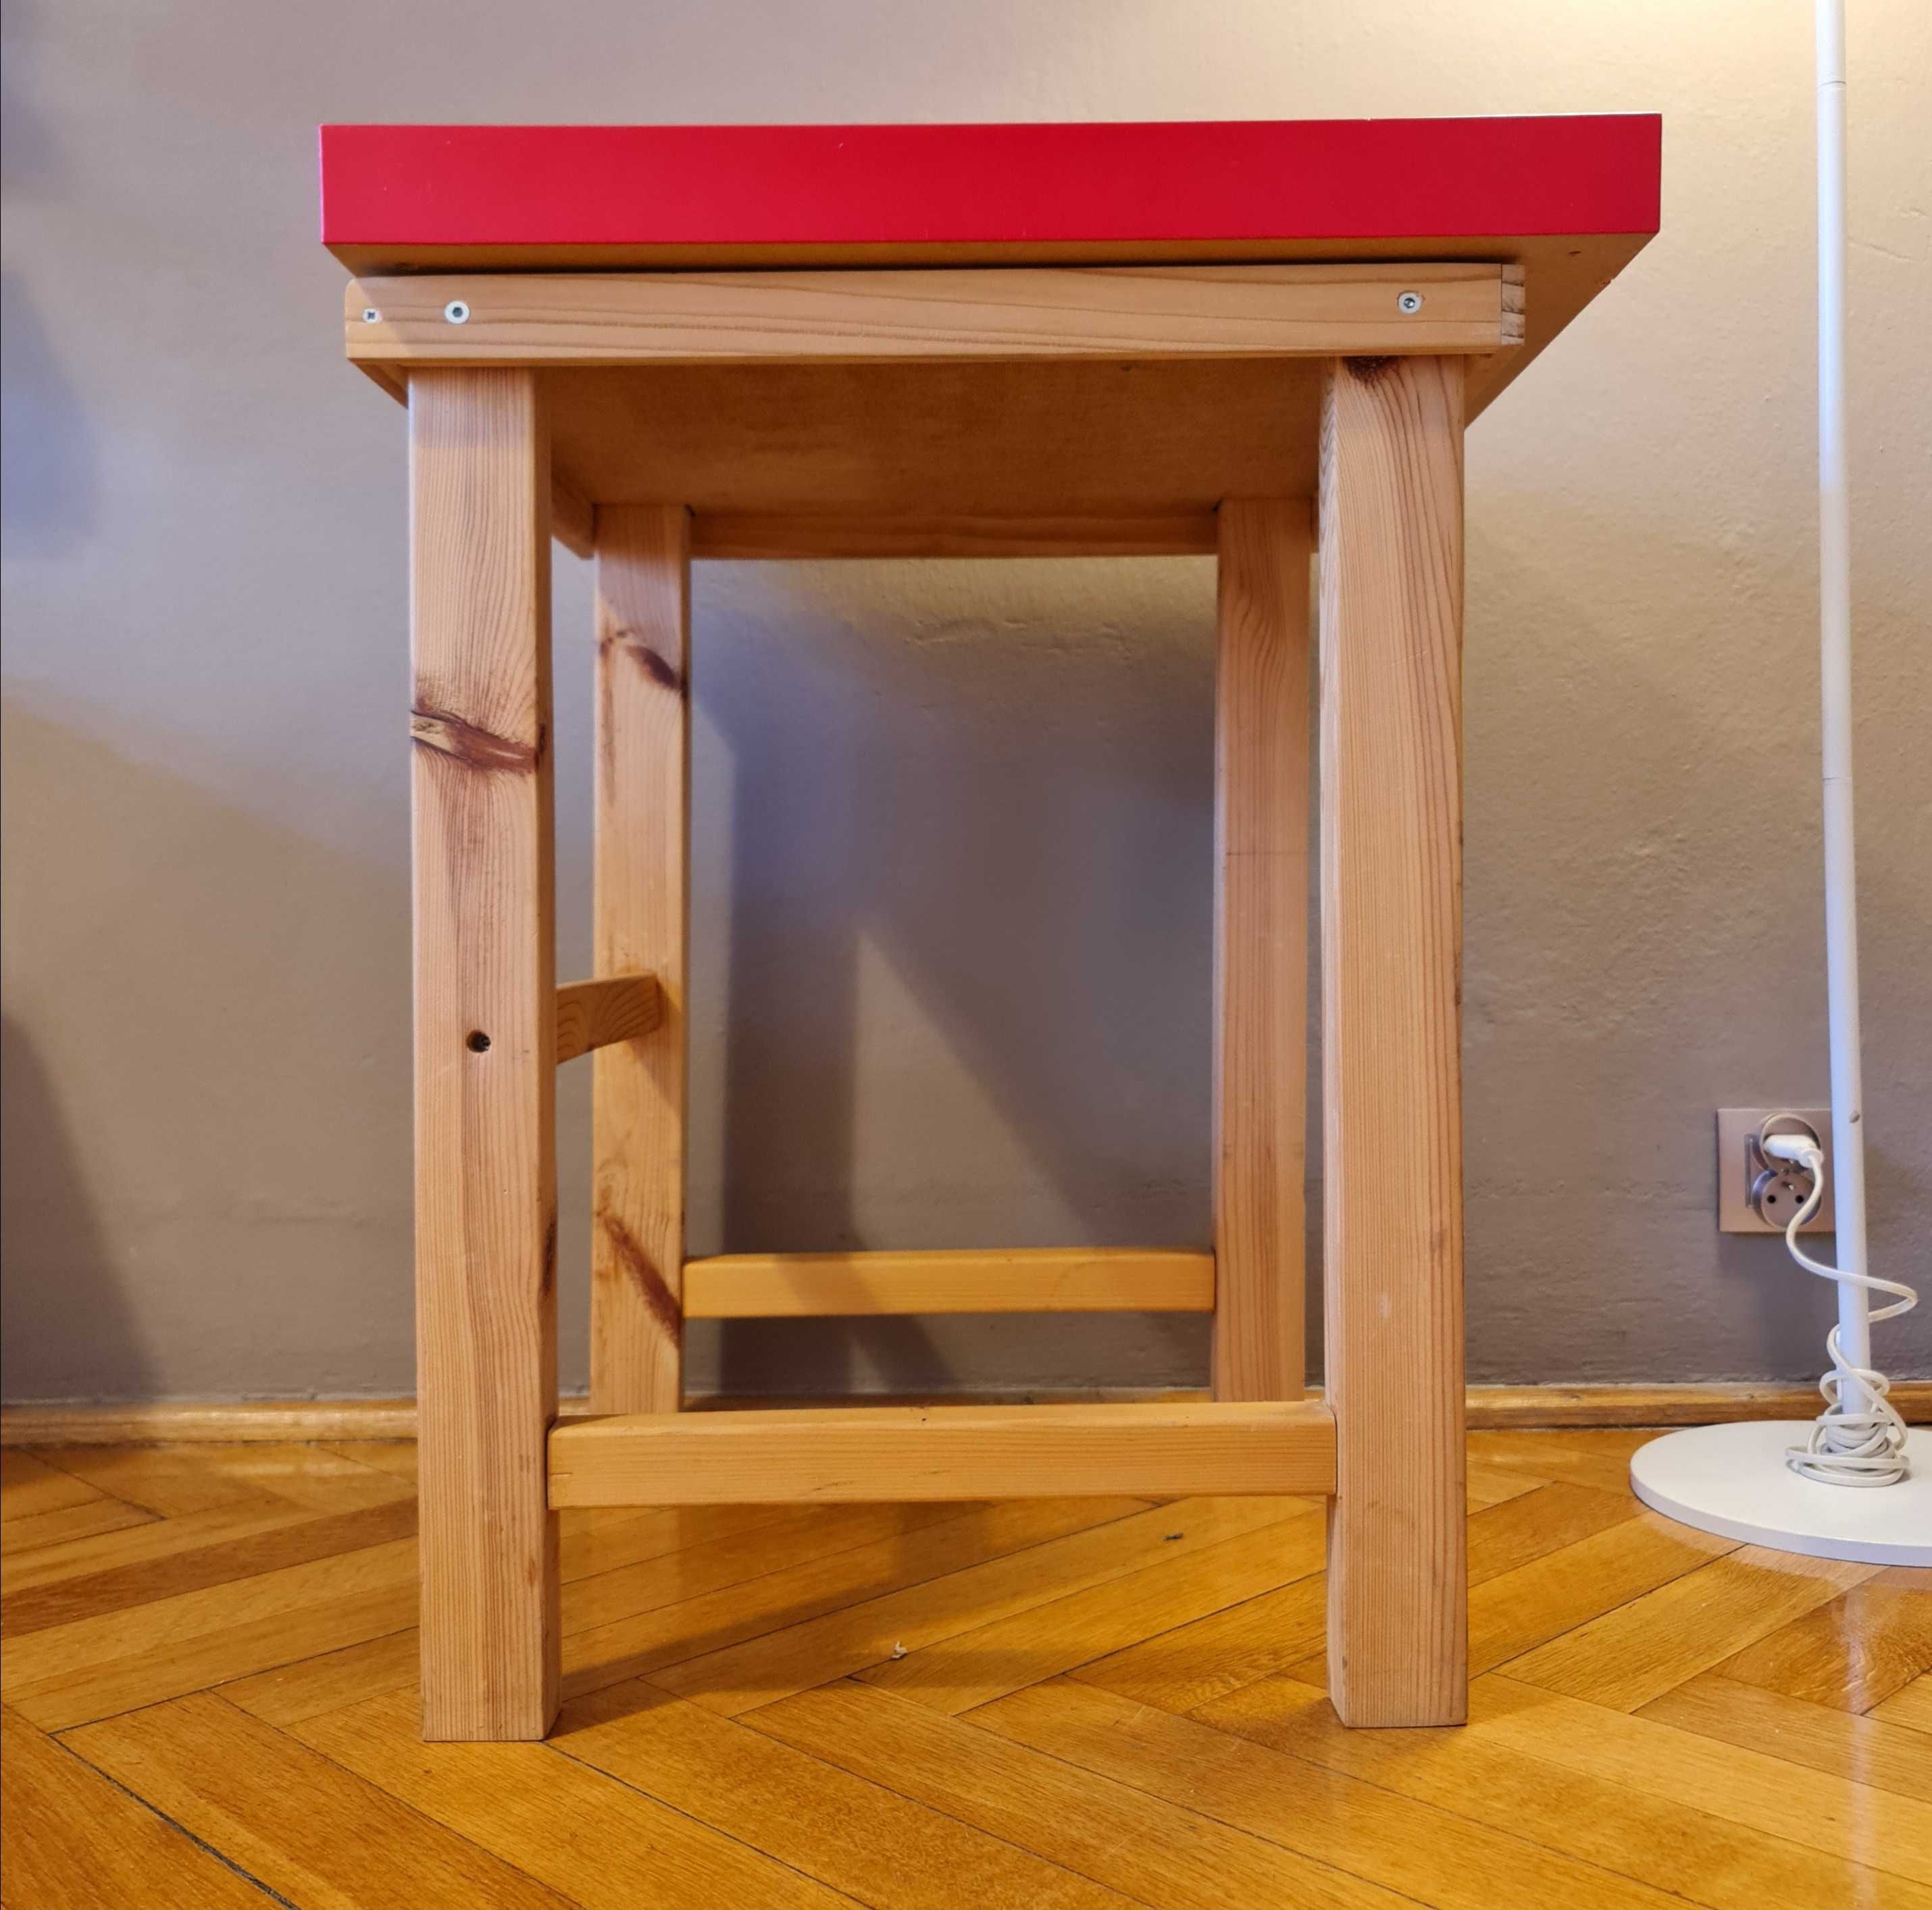 iKEA stół, stolik dla dziecka, z uchylnym blatem i półką